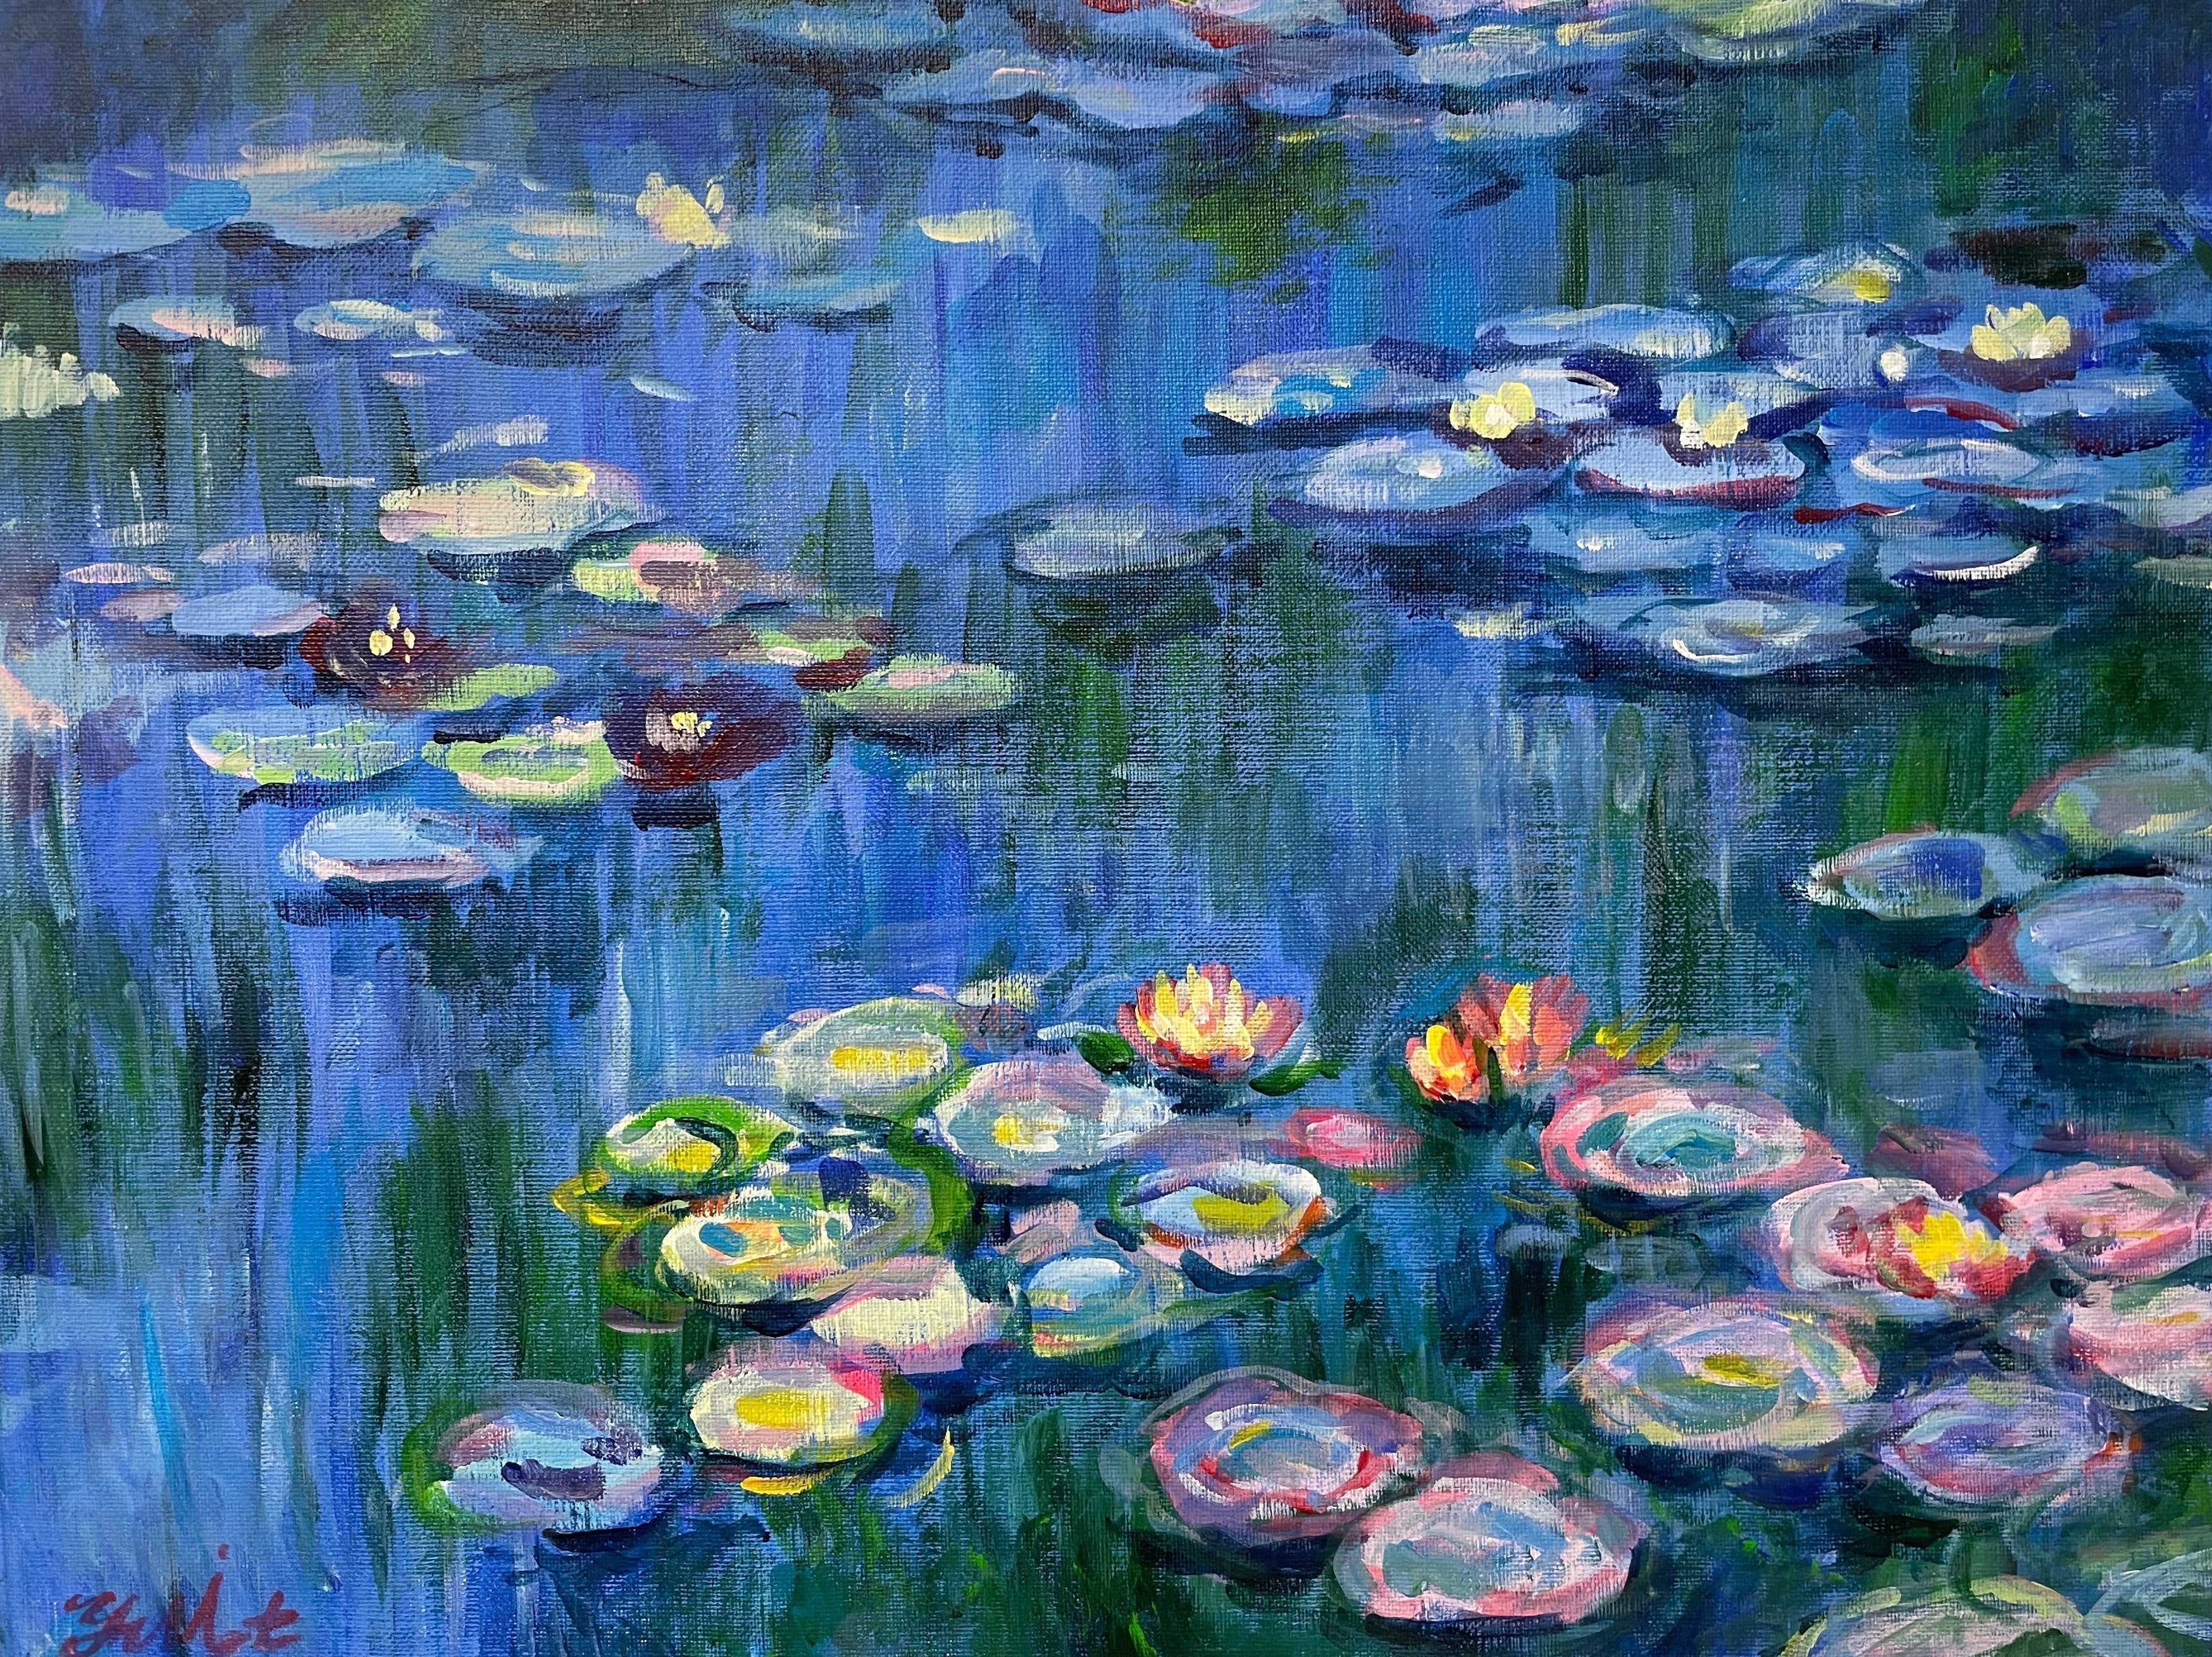 【日本橋】3月20日 (水祝) 14:00-17:00 | クロード・モネ | 睡蓮 (Water Lilies by Claude Monet at Nihon-bashi)